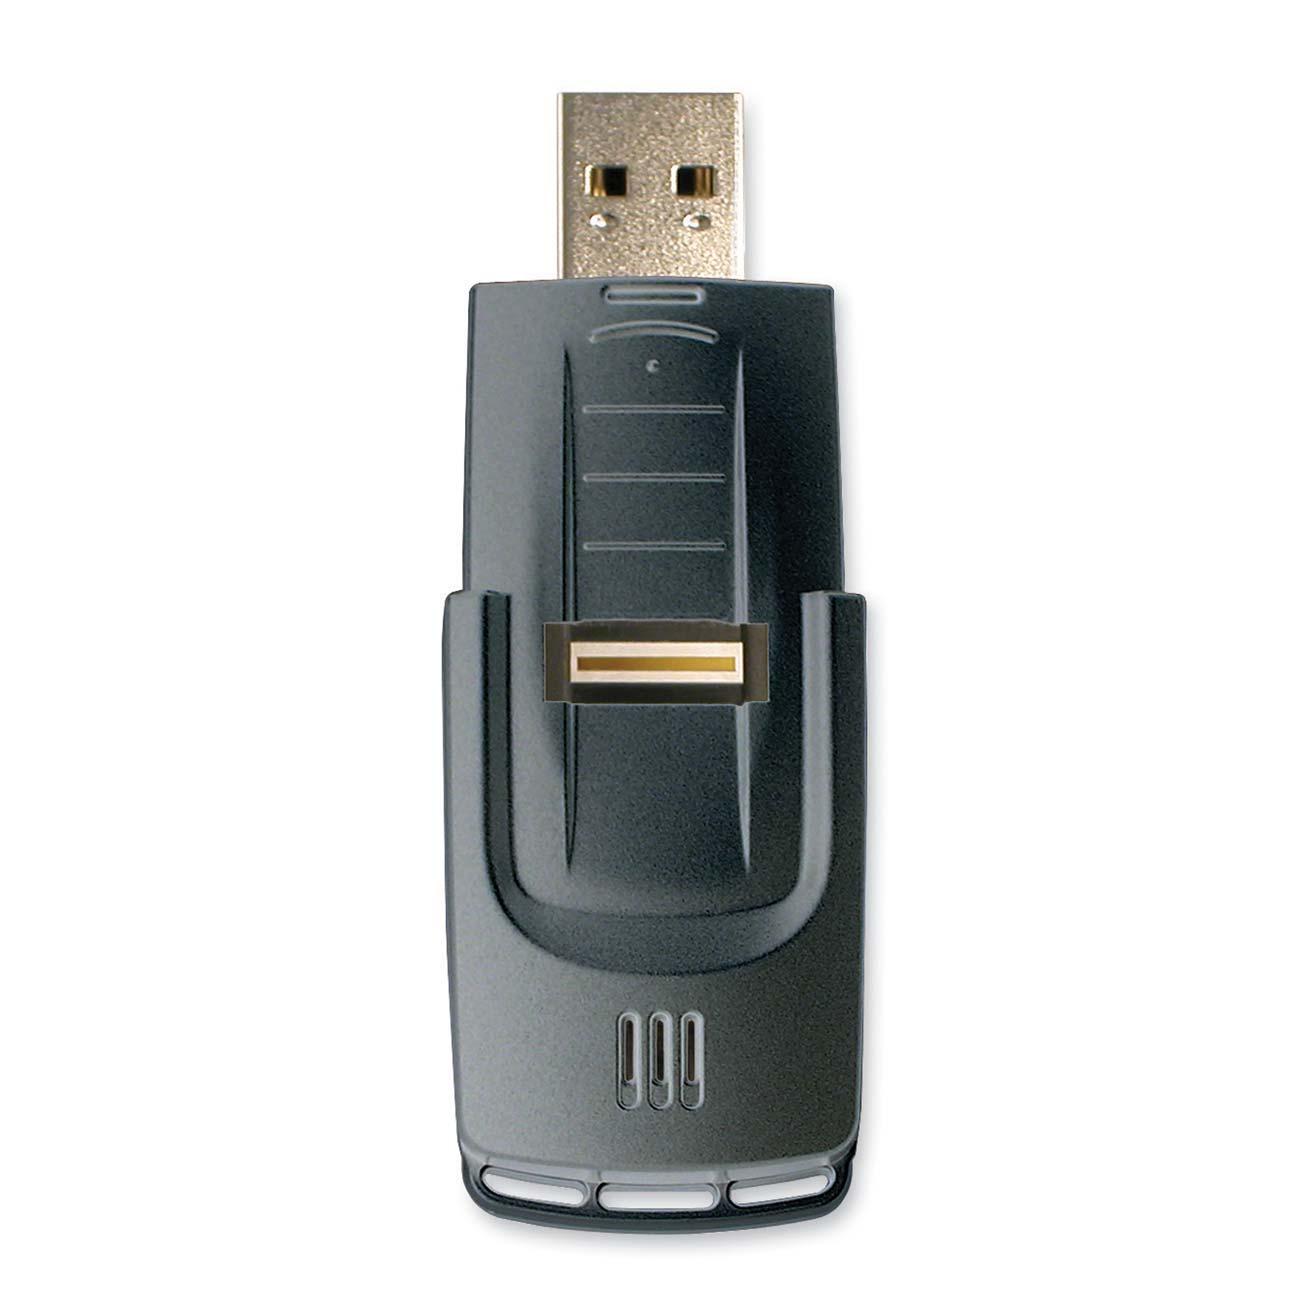 Kanguru Bio AES 2GB USB 2.0 Flash Drive 256bit AES Encryption Model AES SB MD 2G